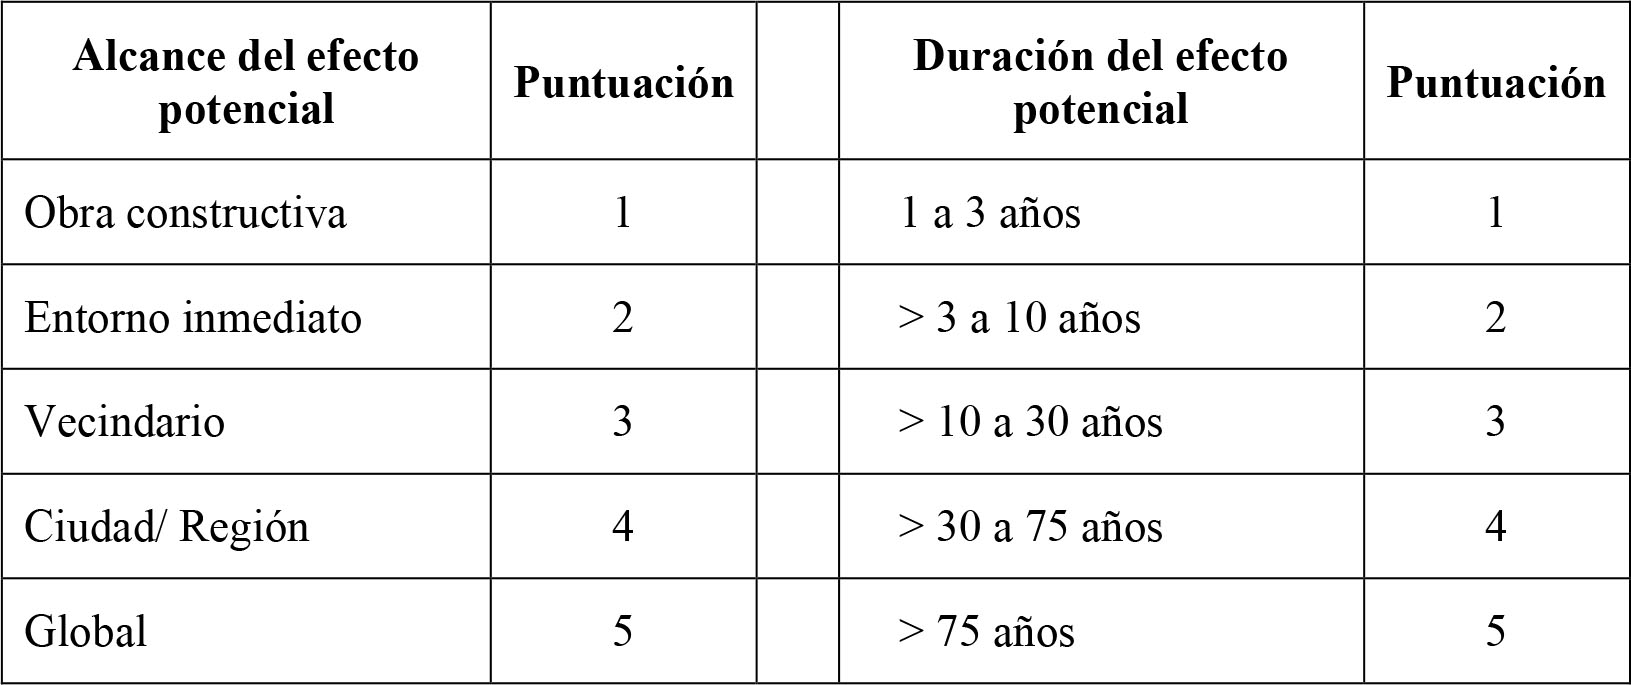 Referencia para determinar el alcance y duración del efecto potencial